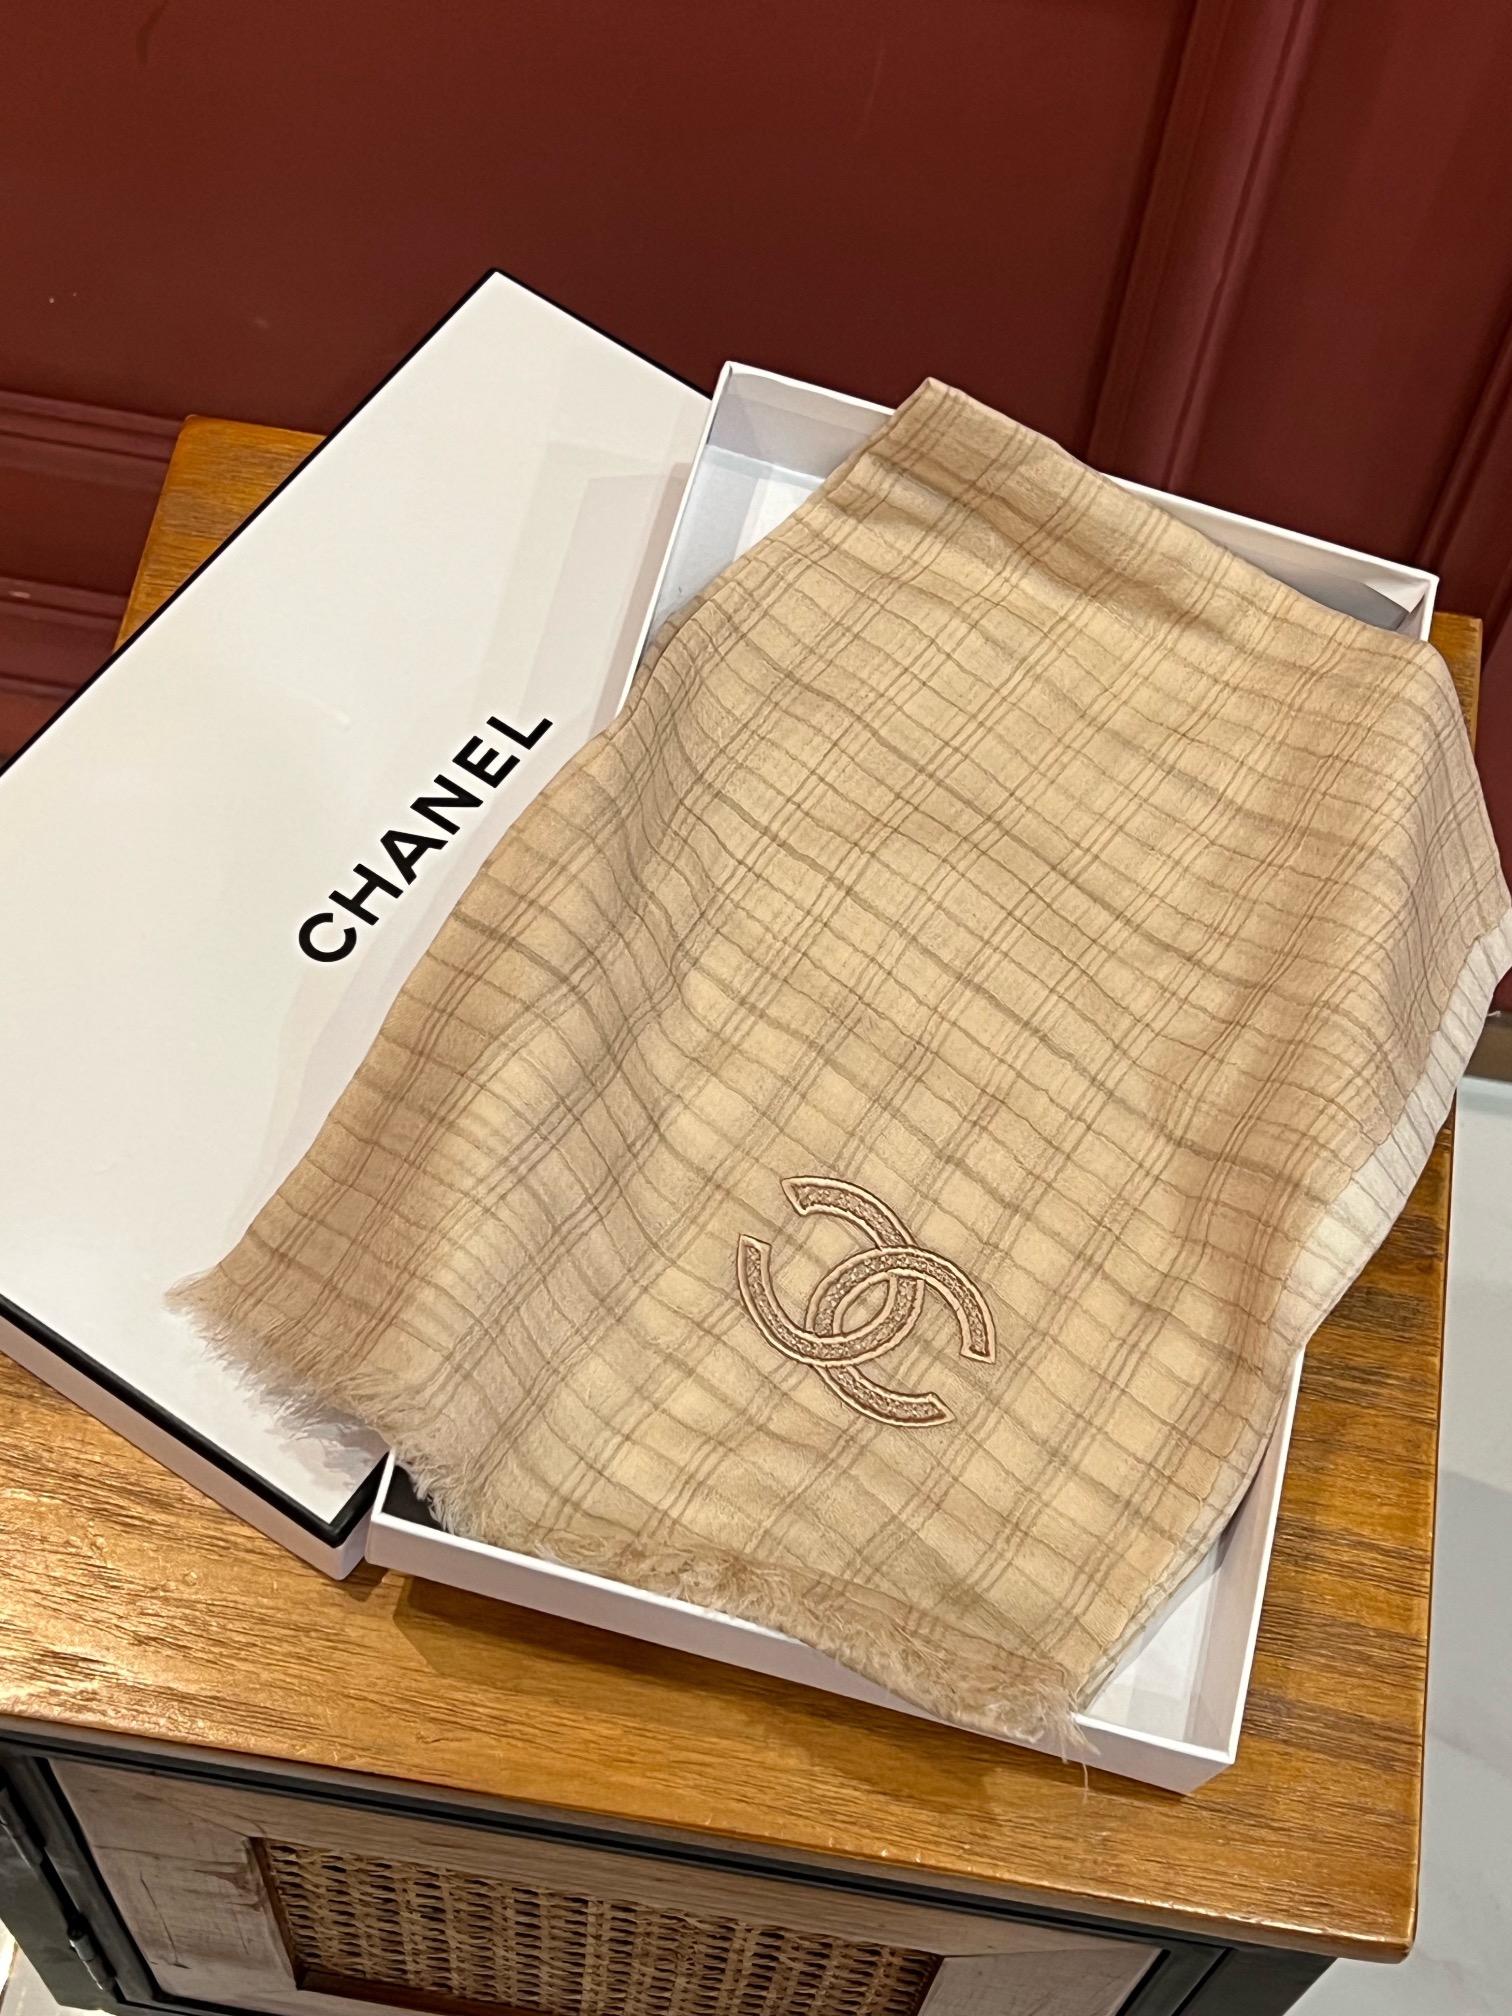 Chanel香奈儿走秀新款羊绒羊绒围巾小香简约风如今可谓风靡全球轻松表达出女性的优雅与高贵感又显复古文艺